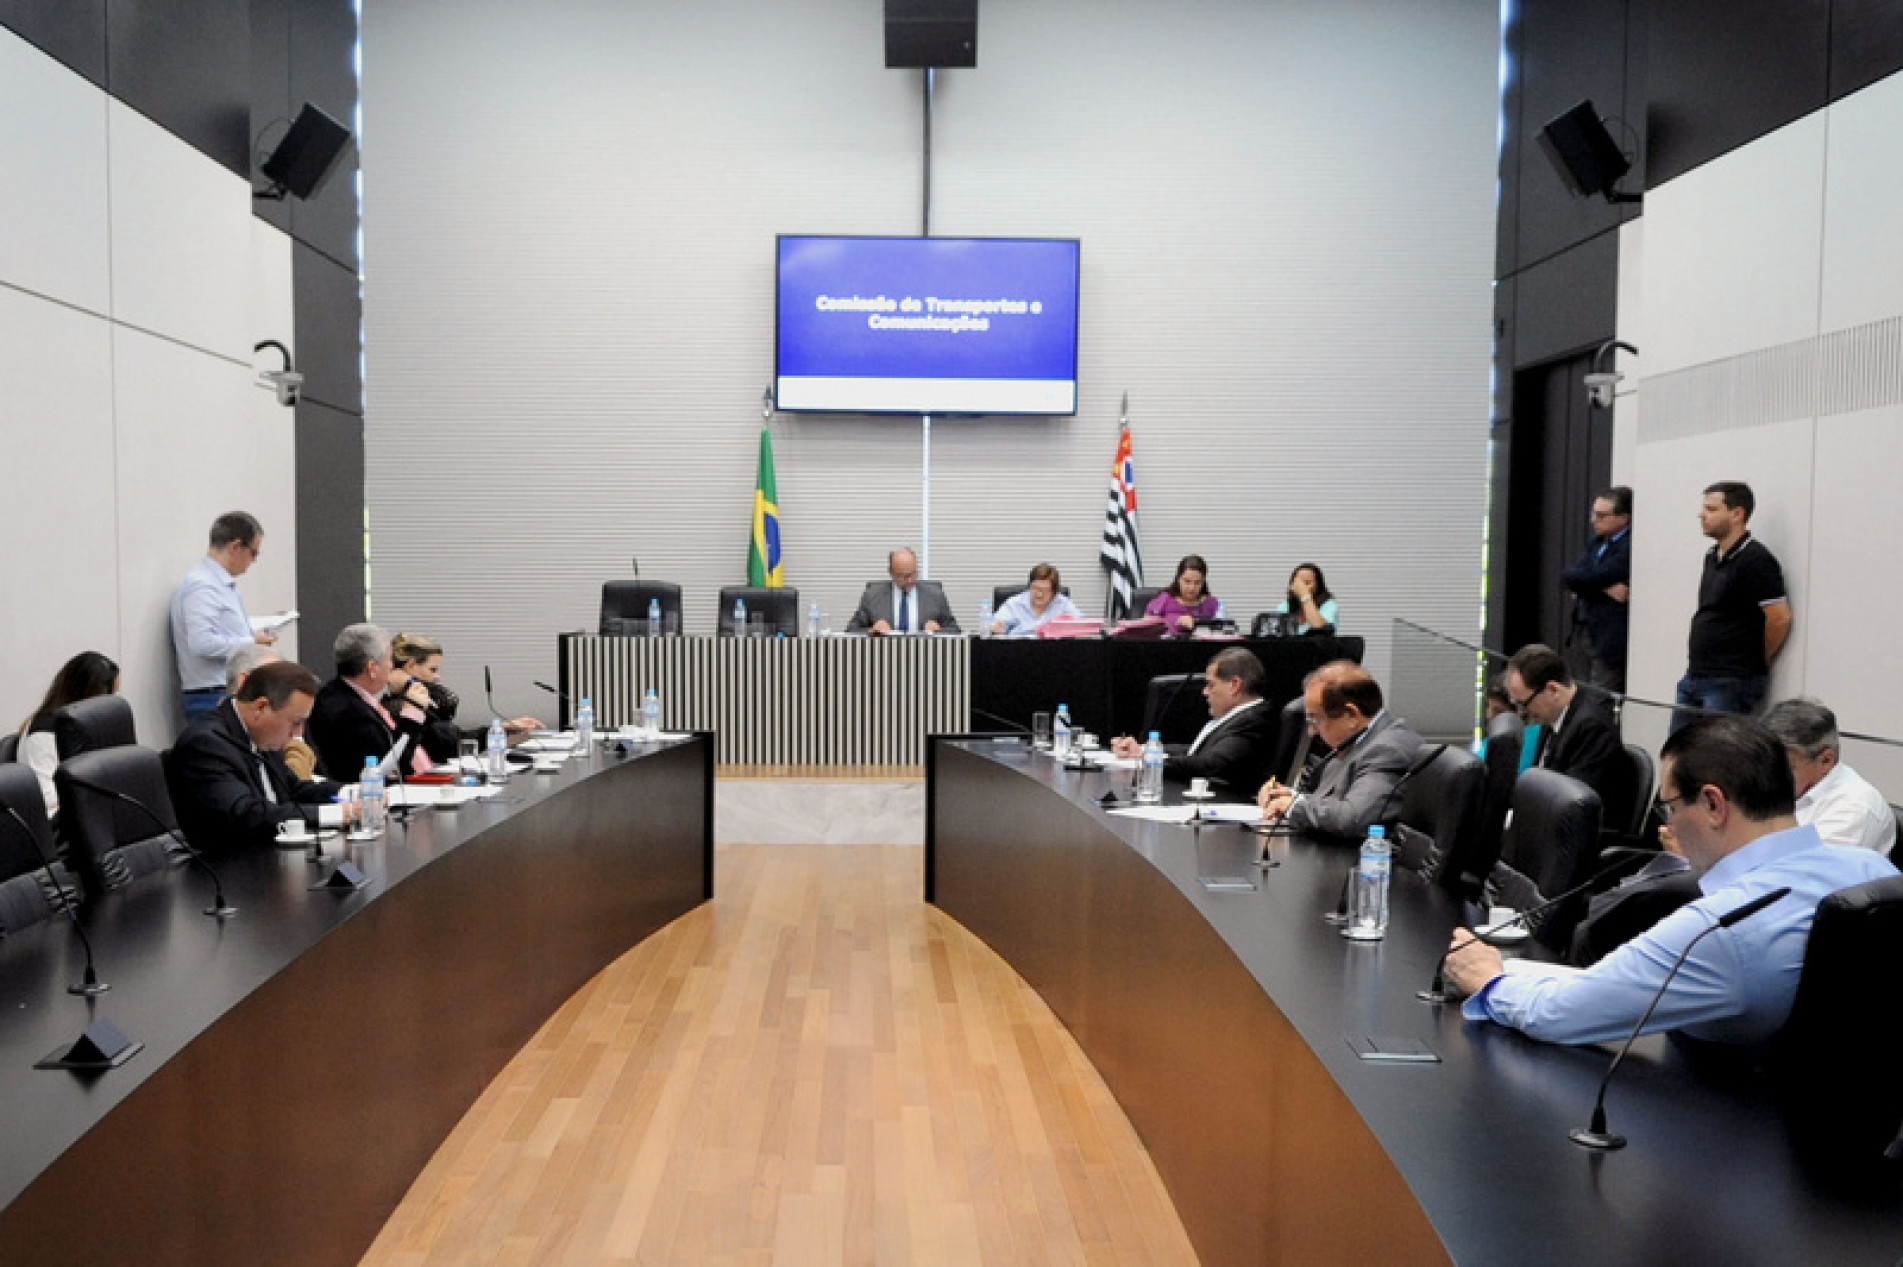 Reunião da Comissão de Transportes e Comunicações da Assembleia Legislativa do Estado de São Paulo